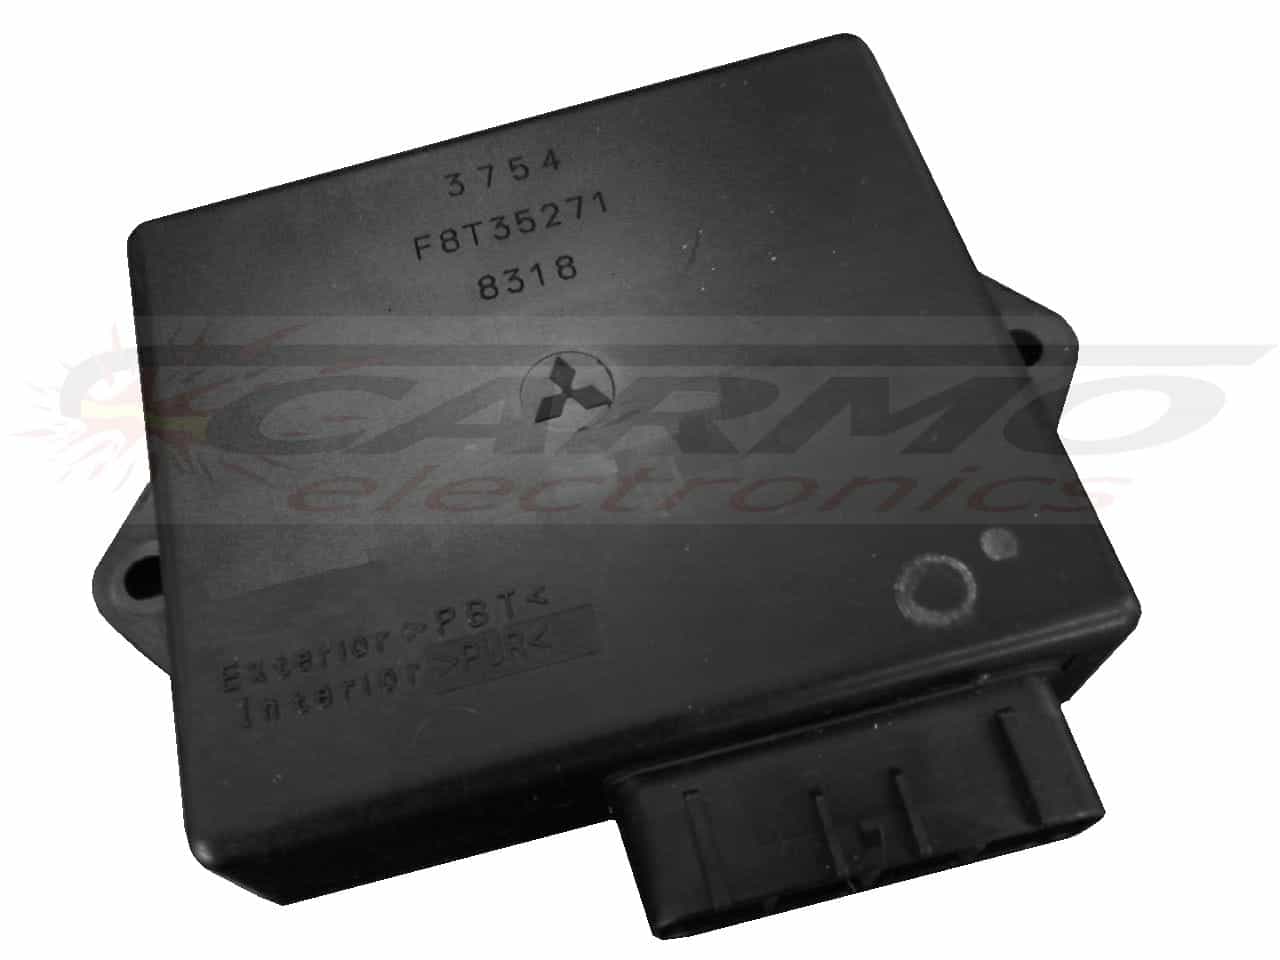 STX900 STS900 CDI ECU ignitor ignition unit F8T35271 / 21119-3754 / 21119-3763 / FT8T40671